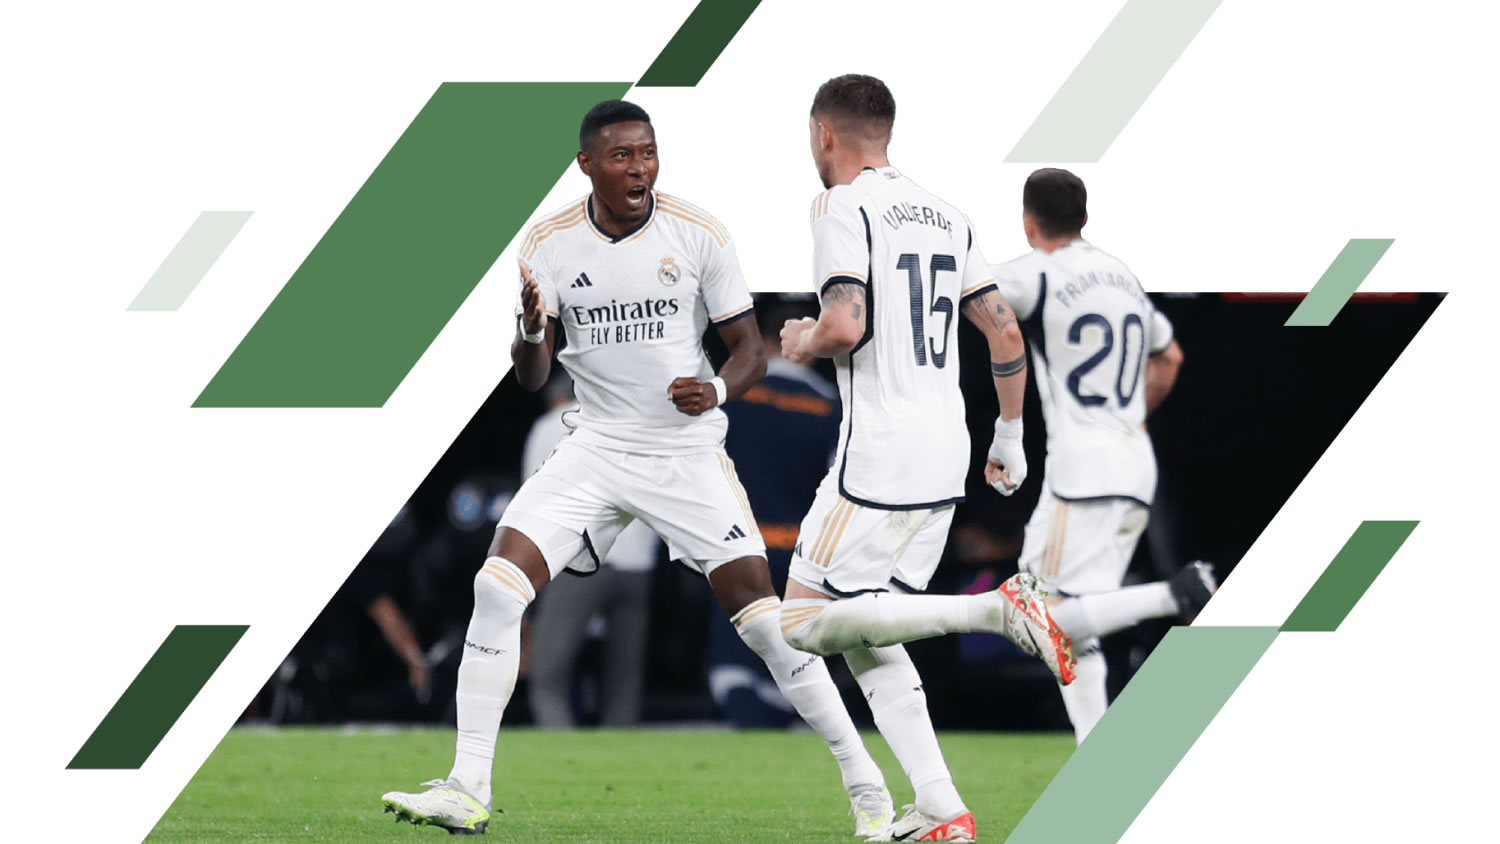 Jugadores del Real Madrid celebrando un gol